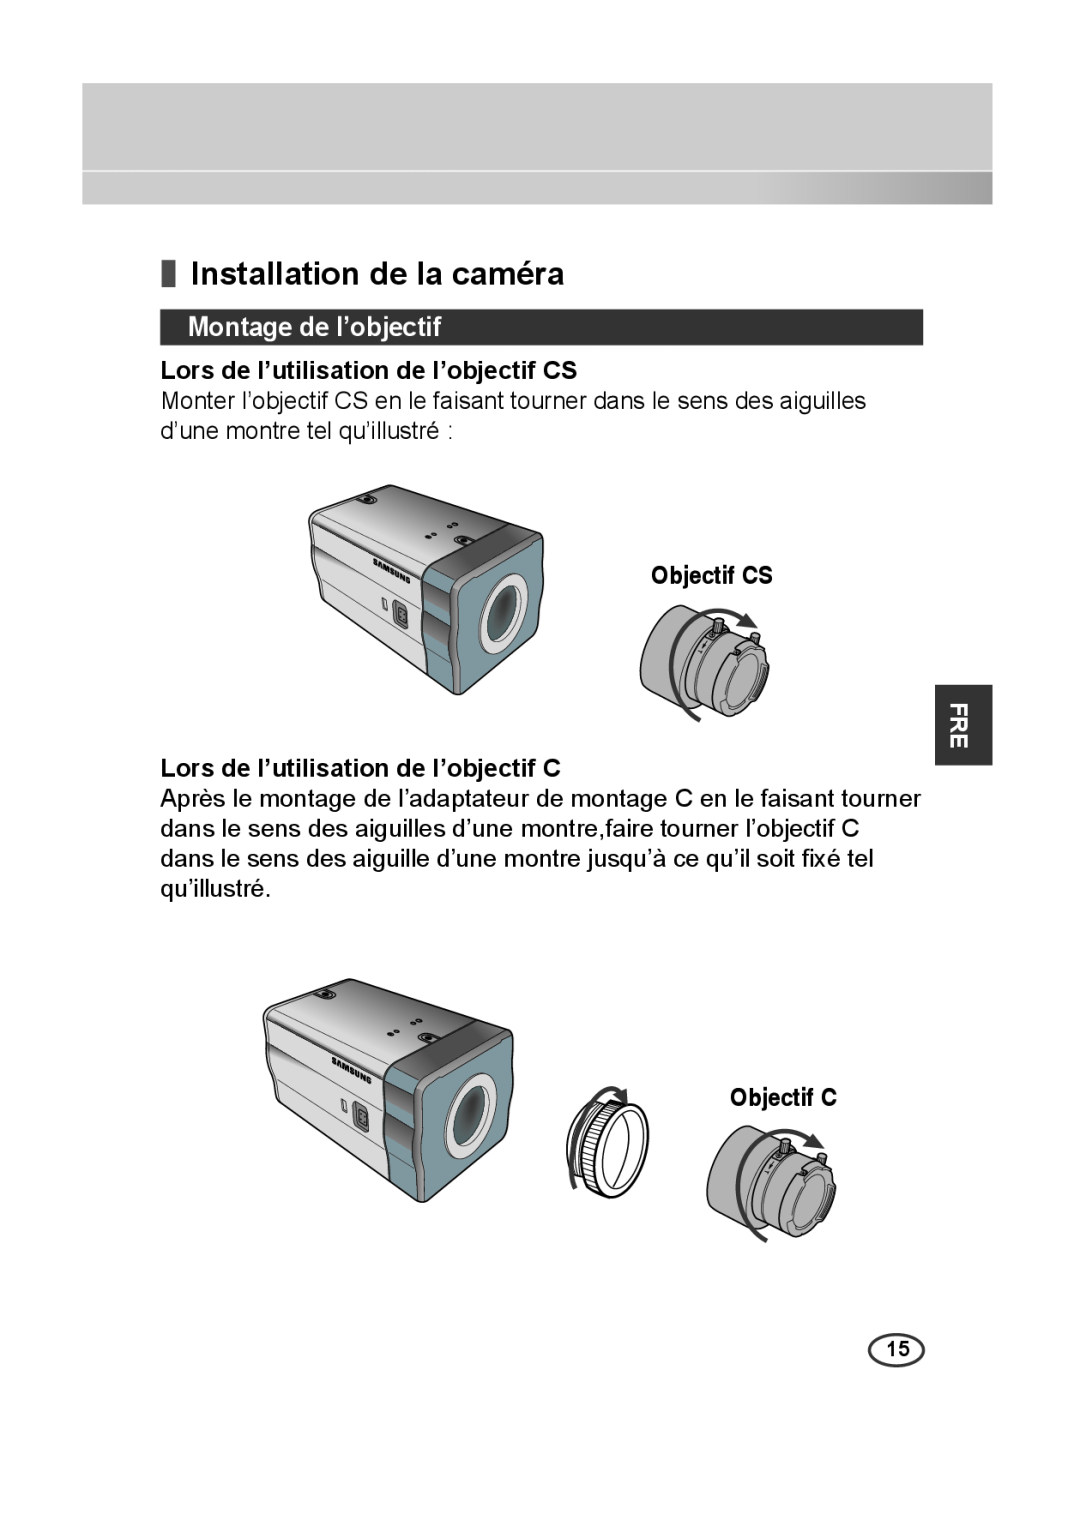 Samsung SCC-B2013P Installation de la caméra, Montage de l’objectif, Lors de l’utilisation de l’objectif CS, Objectif CS 